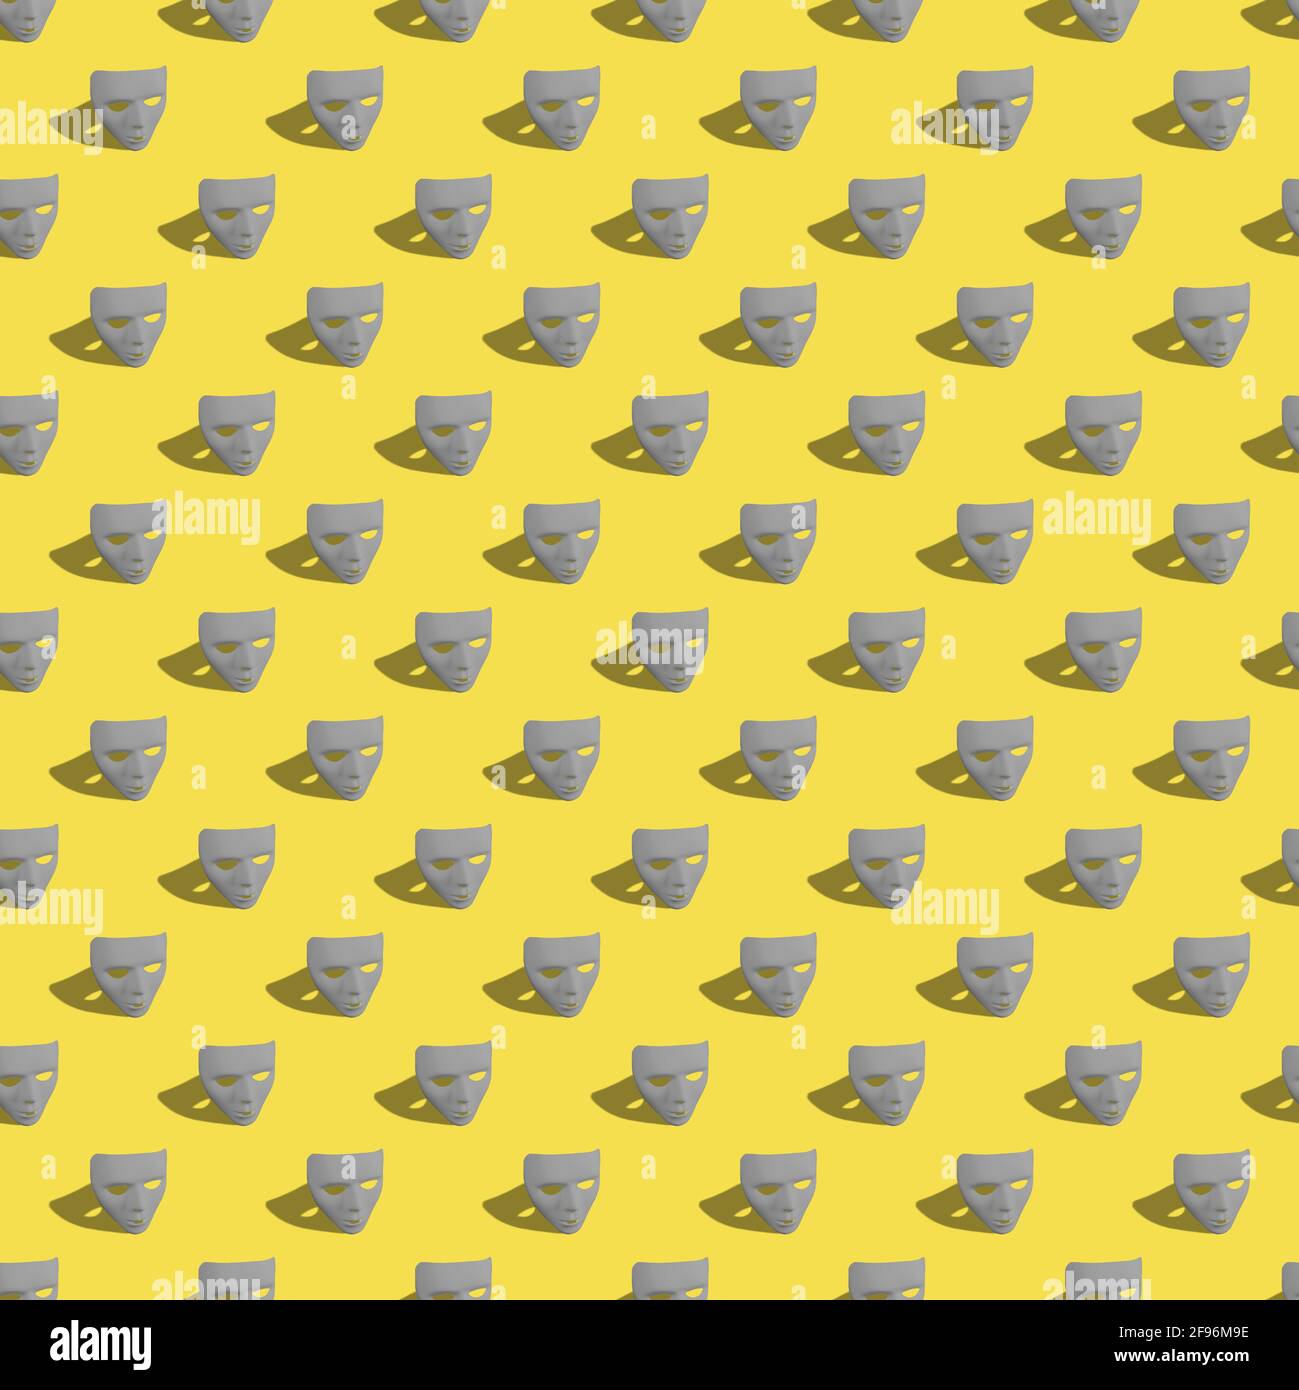 Nahtlose kreative Muster-Layout mit Ultimate Grey Farbe Karneval Masken auf leuchtend gelben Hintergrund gemacht. Mardi Gras oder Karneval Maske Konzept. Stockfoto